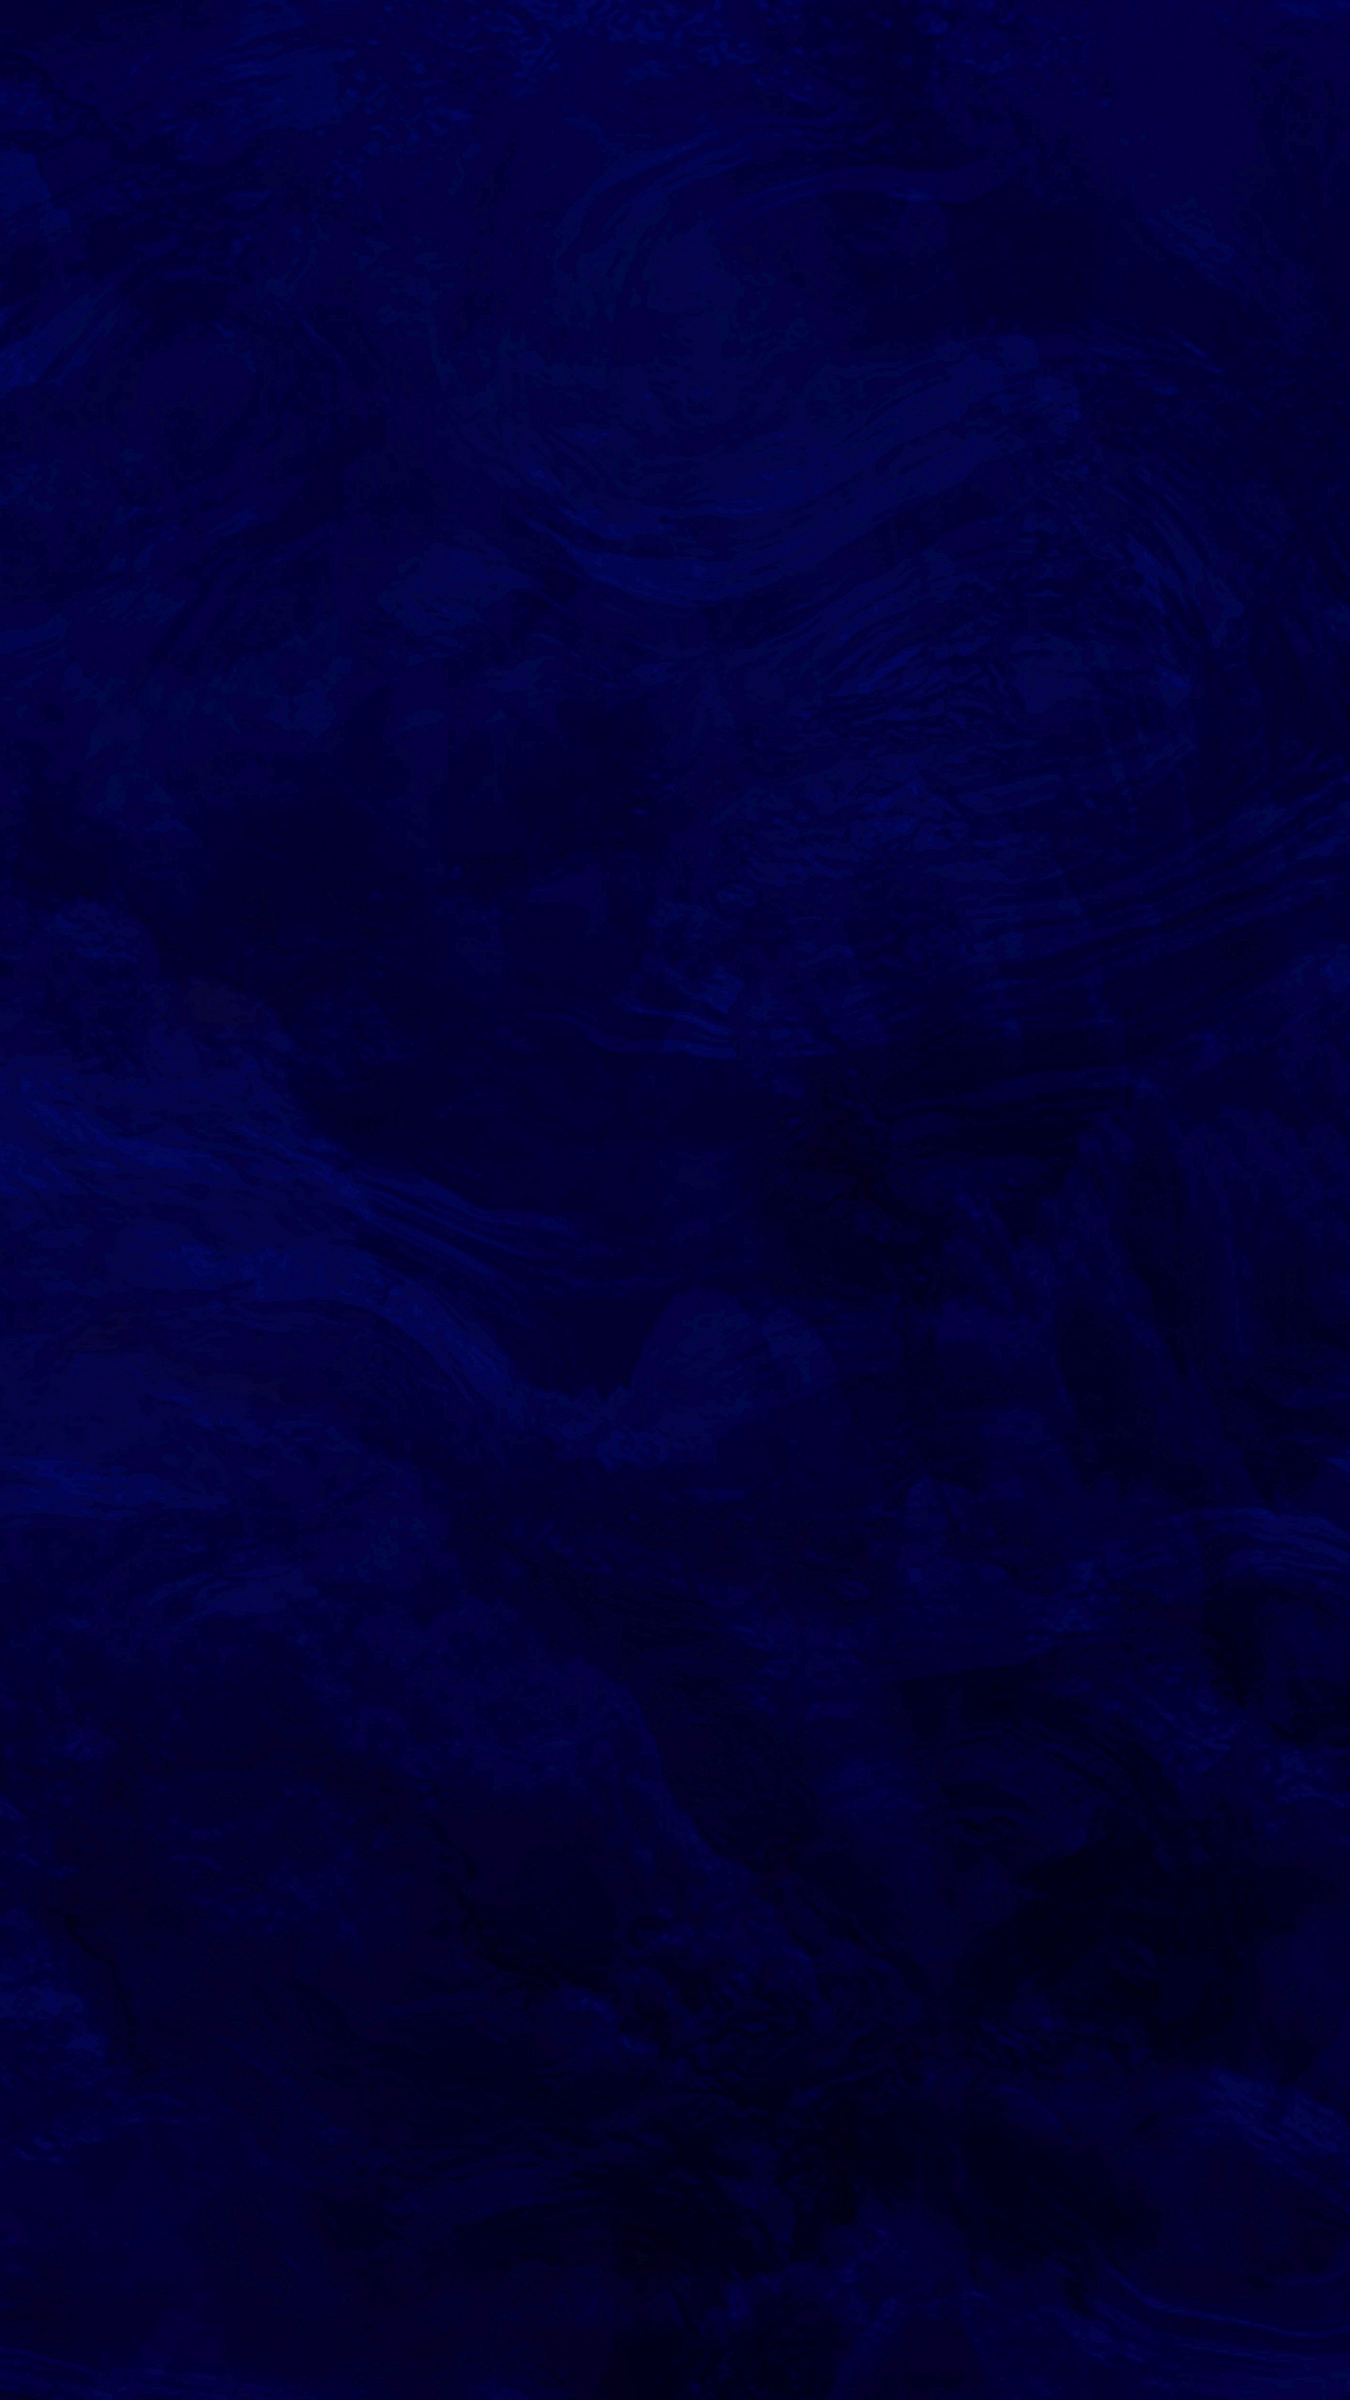 Wallpaper Texture Surface Dark Blue iPhone